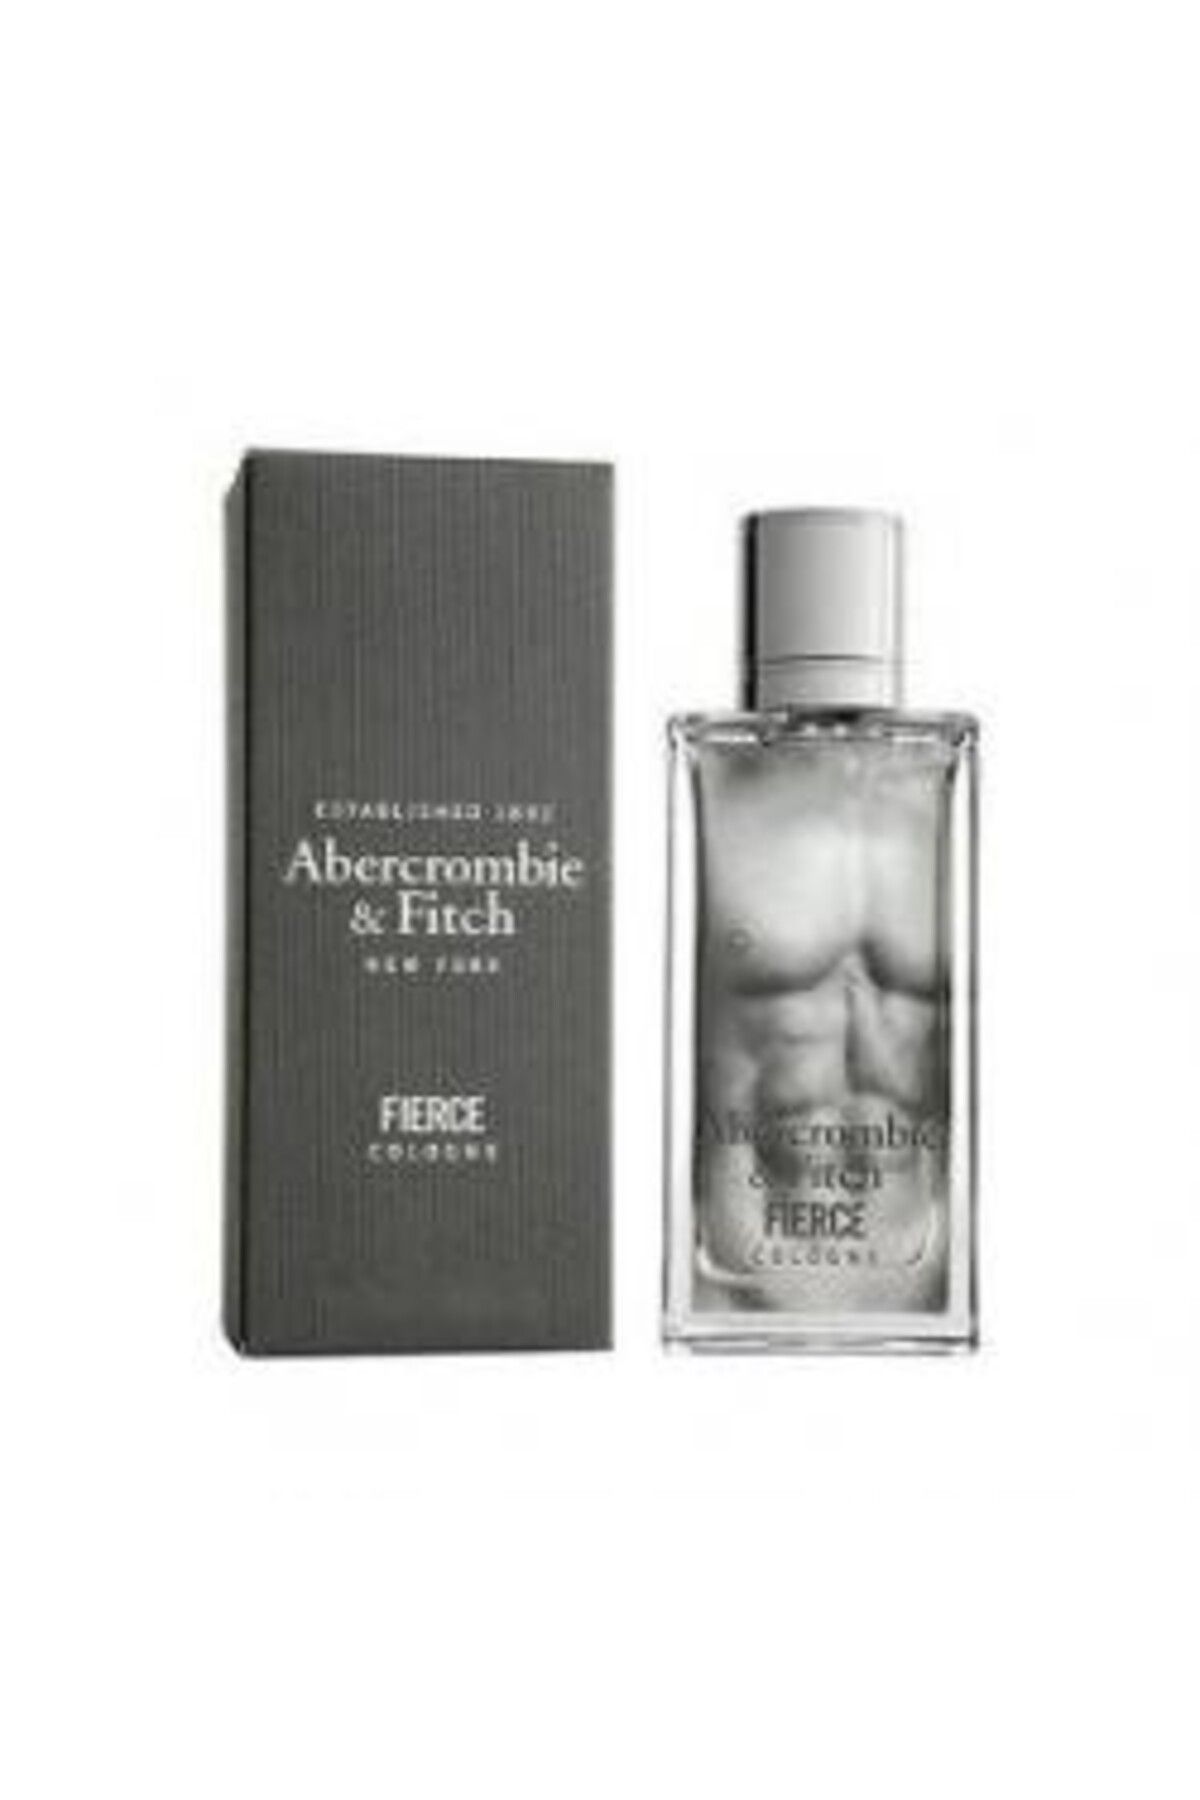 Abercrombie & Fitch Abercrombıe Fıerce 200 Ml Erkek Parfüm